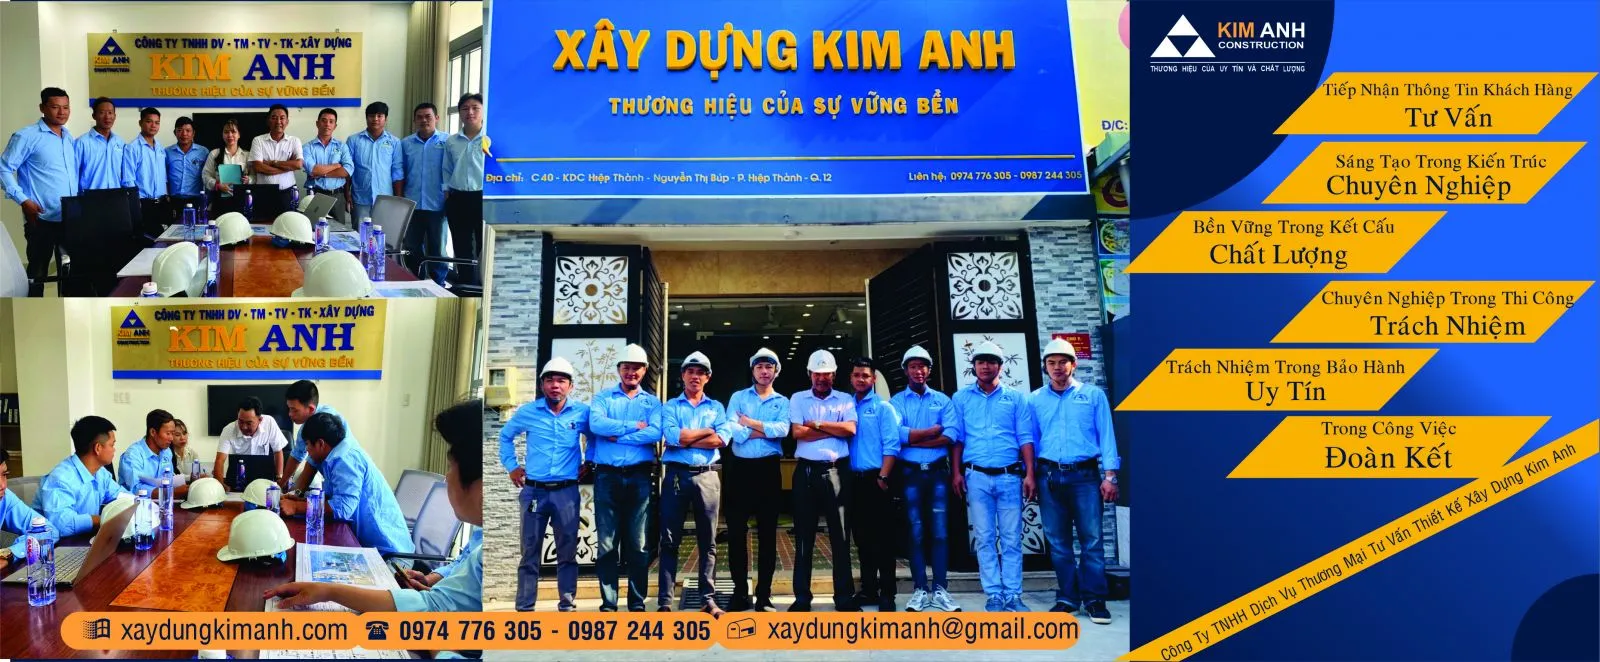 Xây Dựng Kim Anh: Công ty xây dựng nhà Huyện Hóc Môn